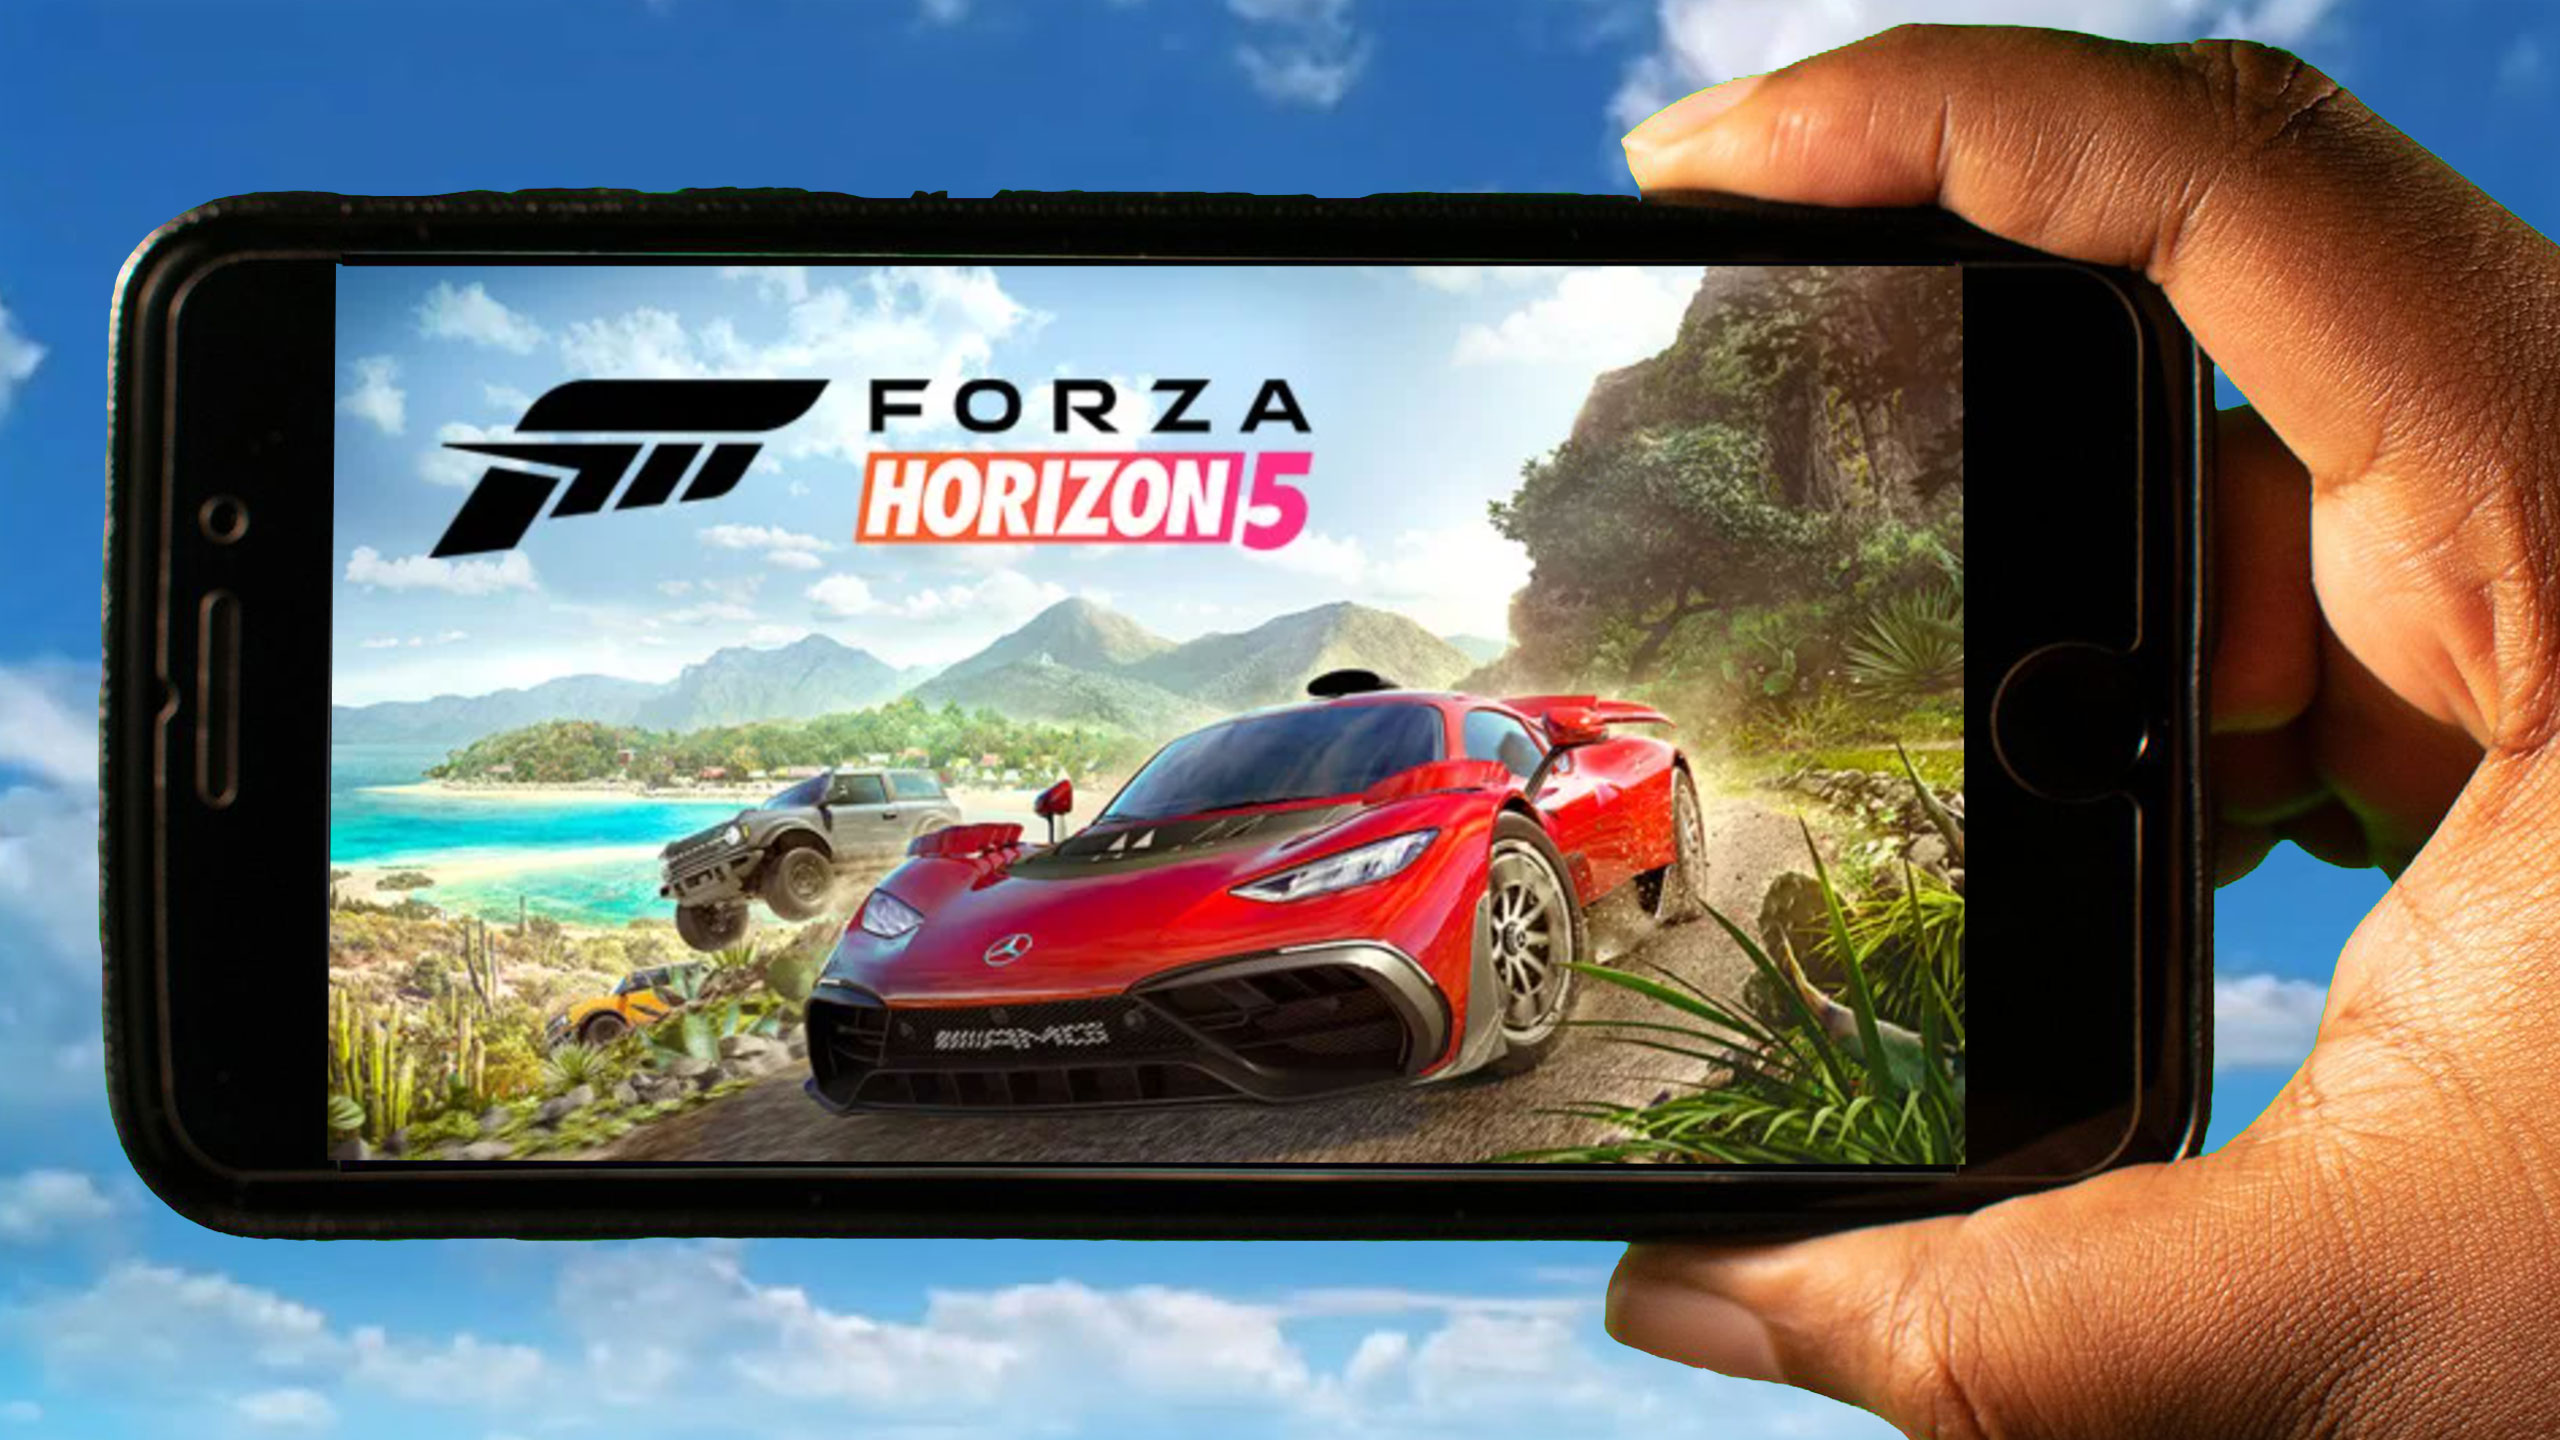 🤯 Finally !! Forza Horizon 5 on Android